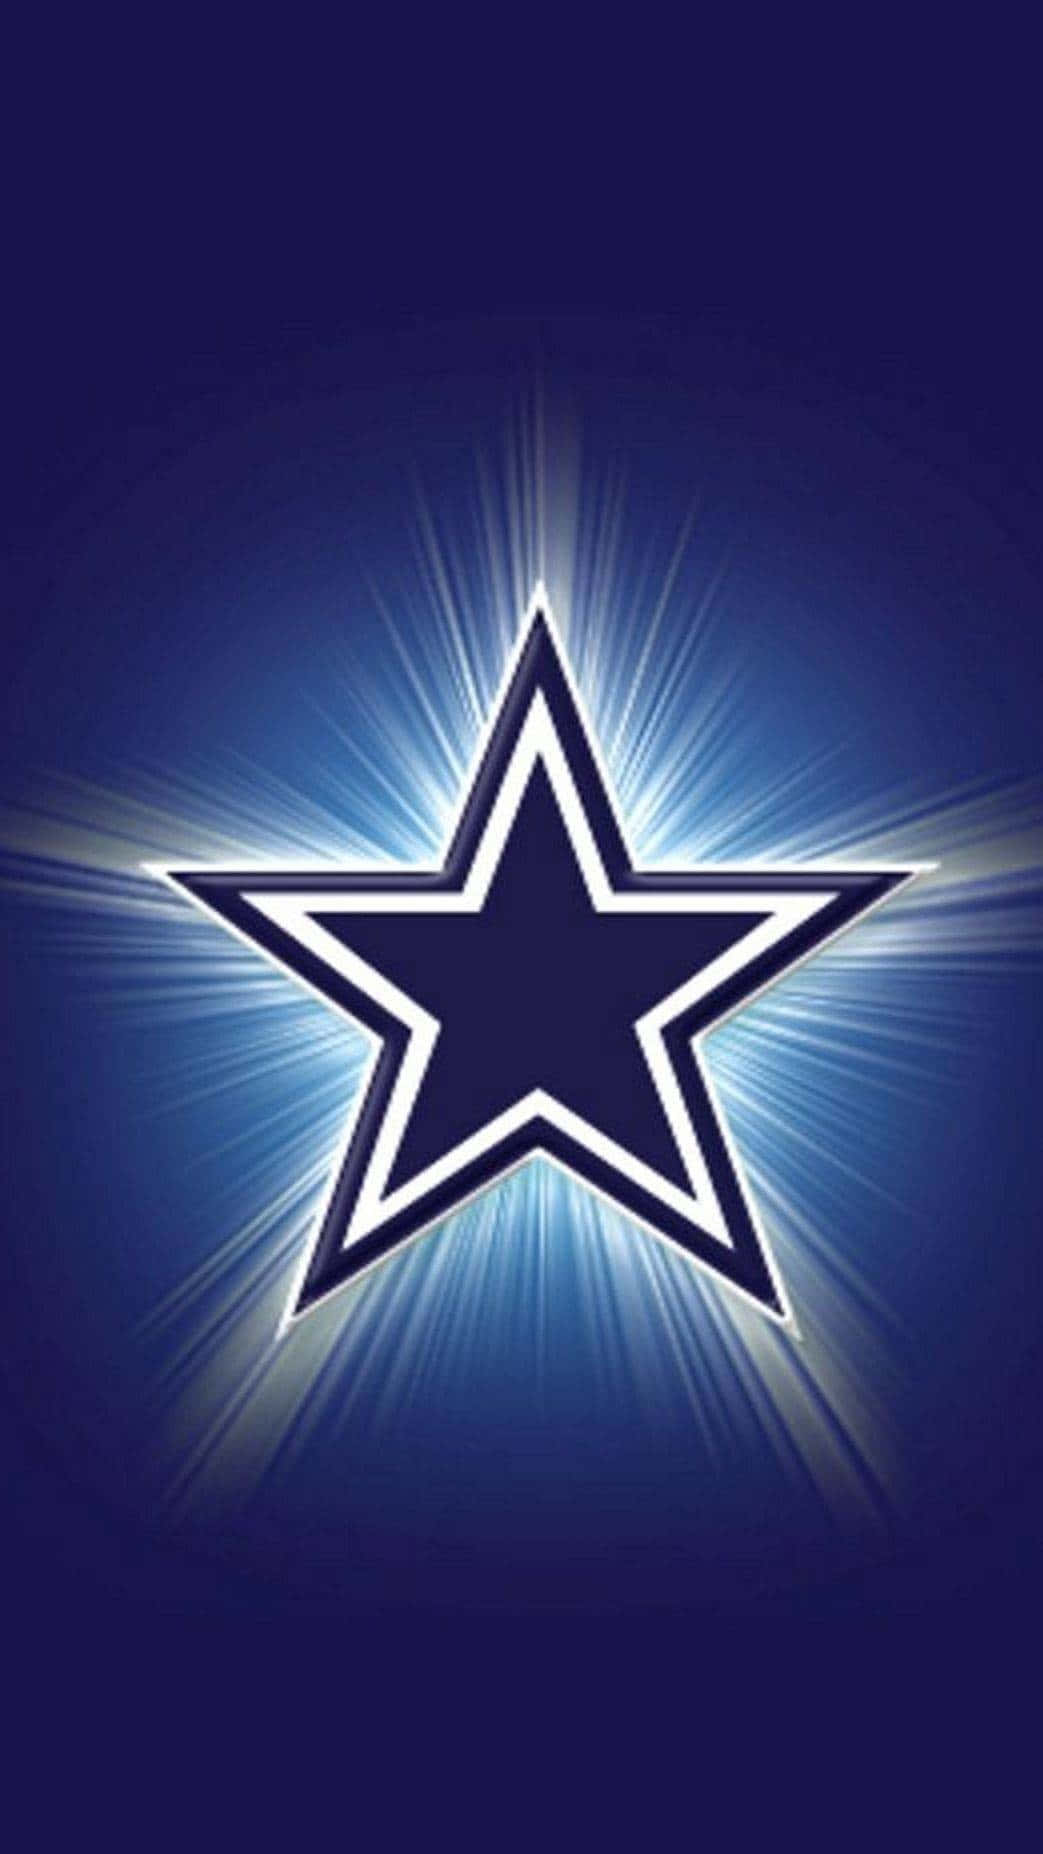 Papelde Parede Para Celular Do Logotipo Brilhante Da Estrela Dos Cowboys De Dallas. Papel de Parede